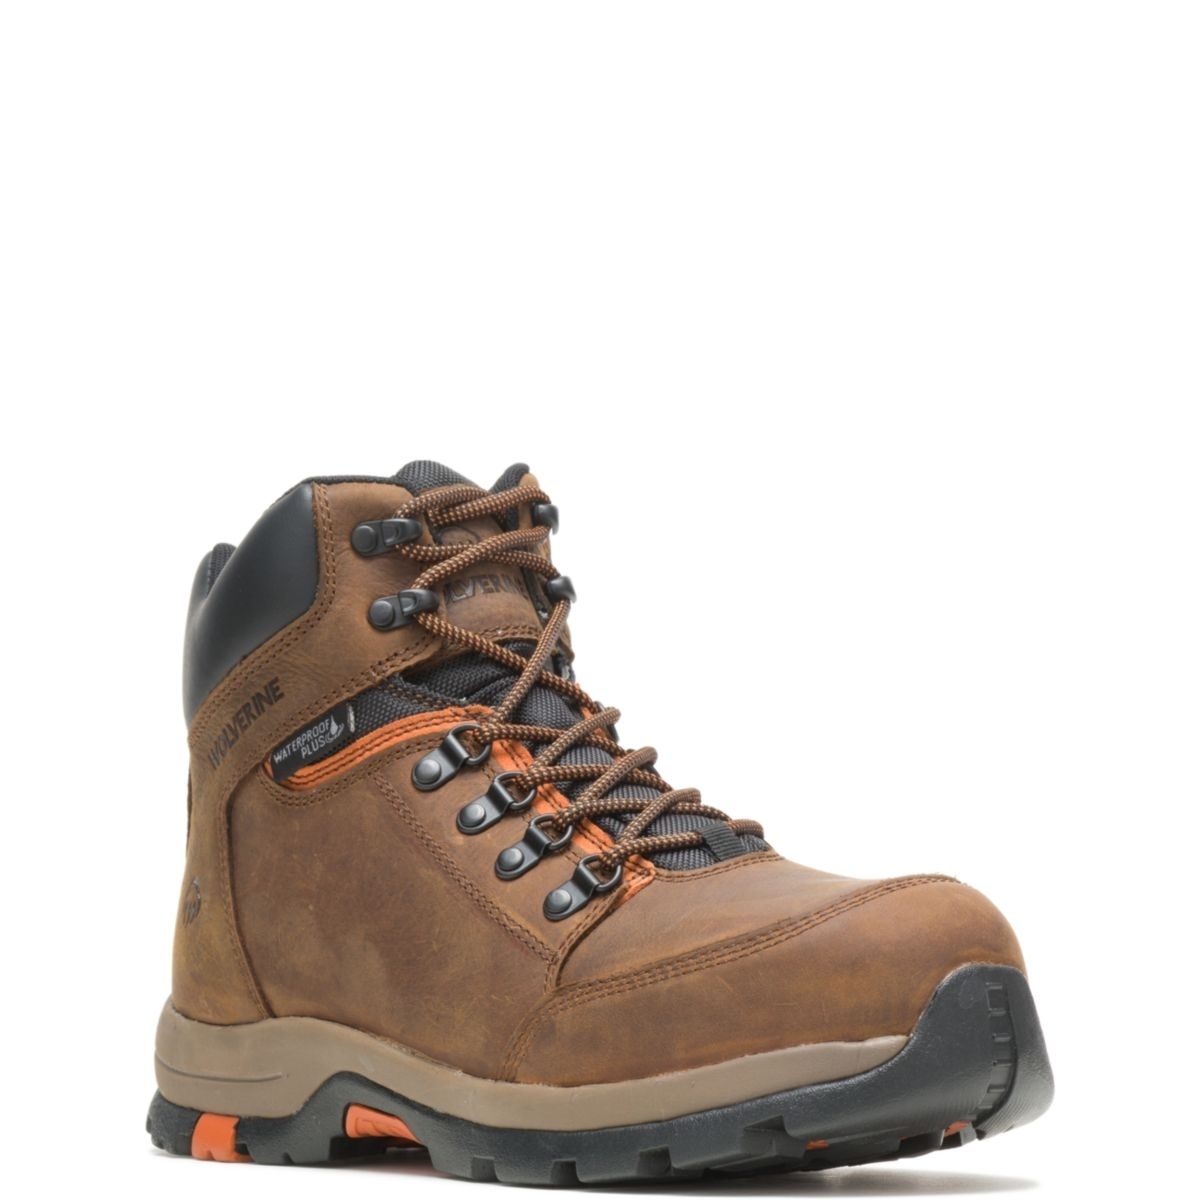 WOLVERINE Men's Grayson Steel Toe Waterproof Work Boot Brown - W211043 BROWN - BROWN, 12